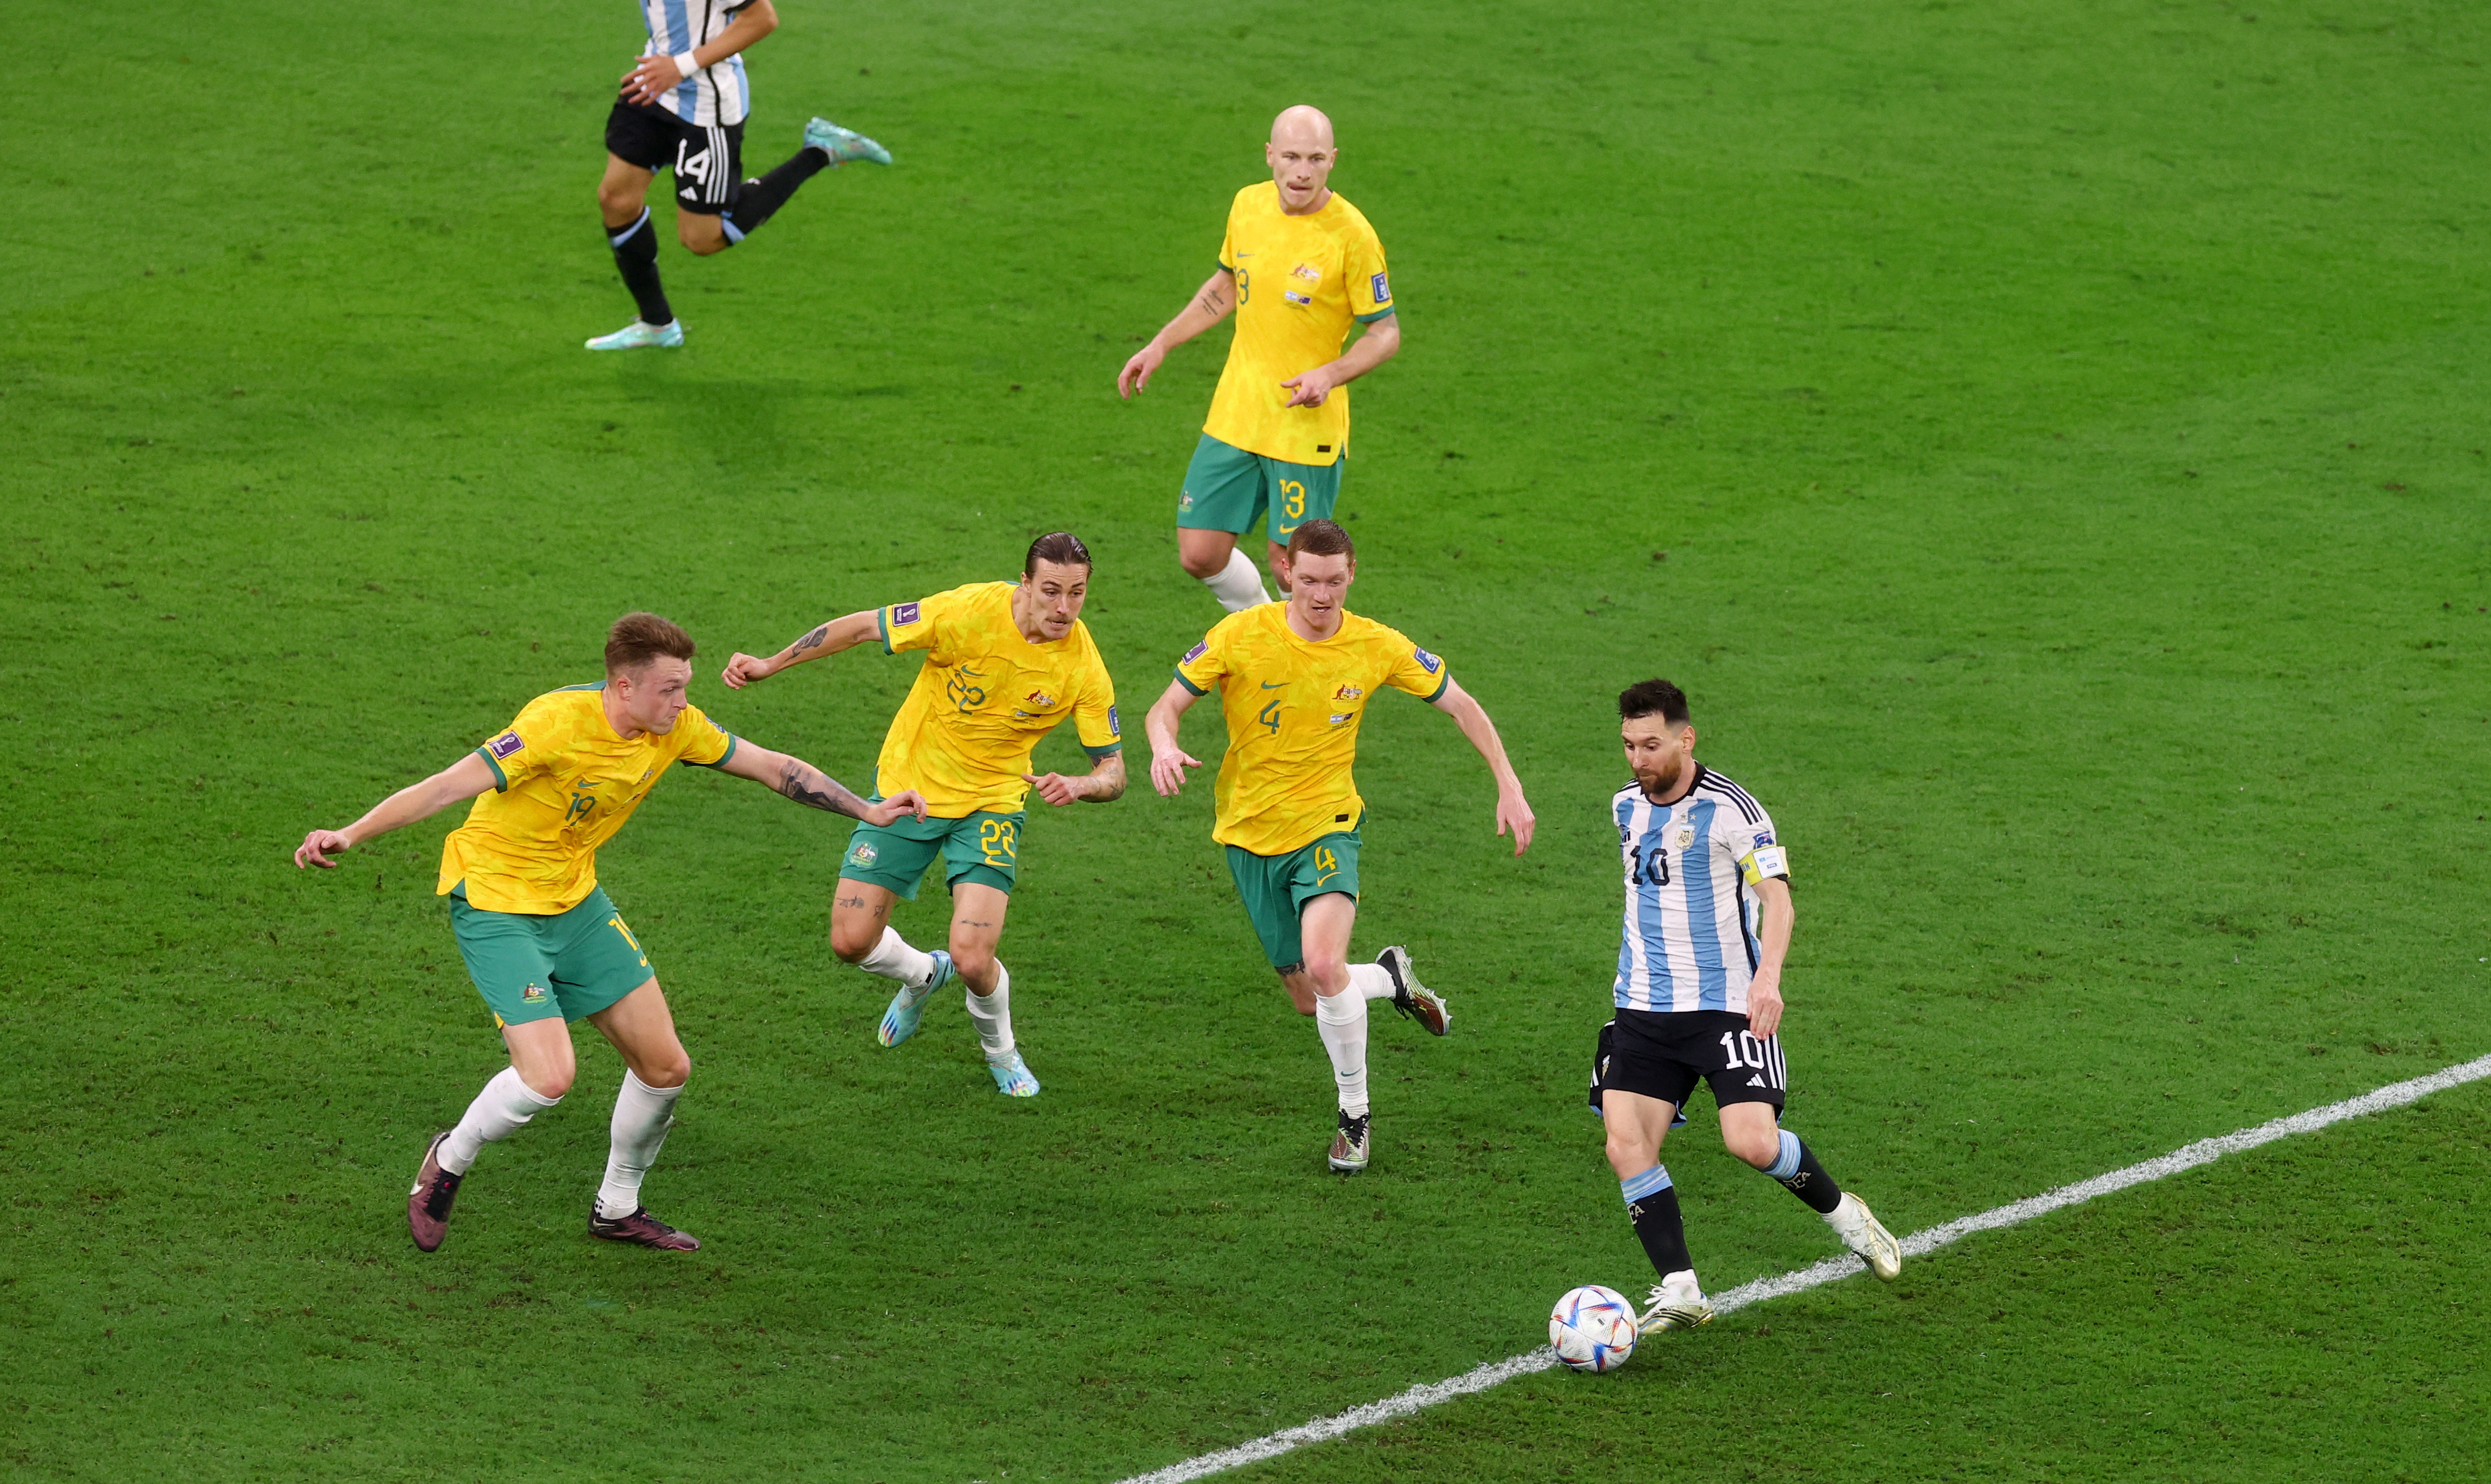 Una postal que suele repetirse: Messi rodeado de rivales que tratan de quitarle el balón